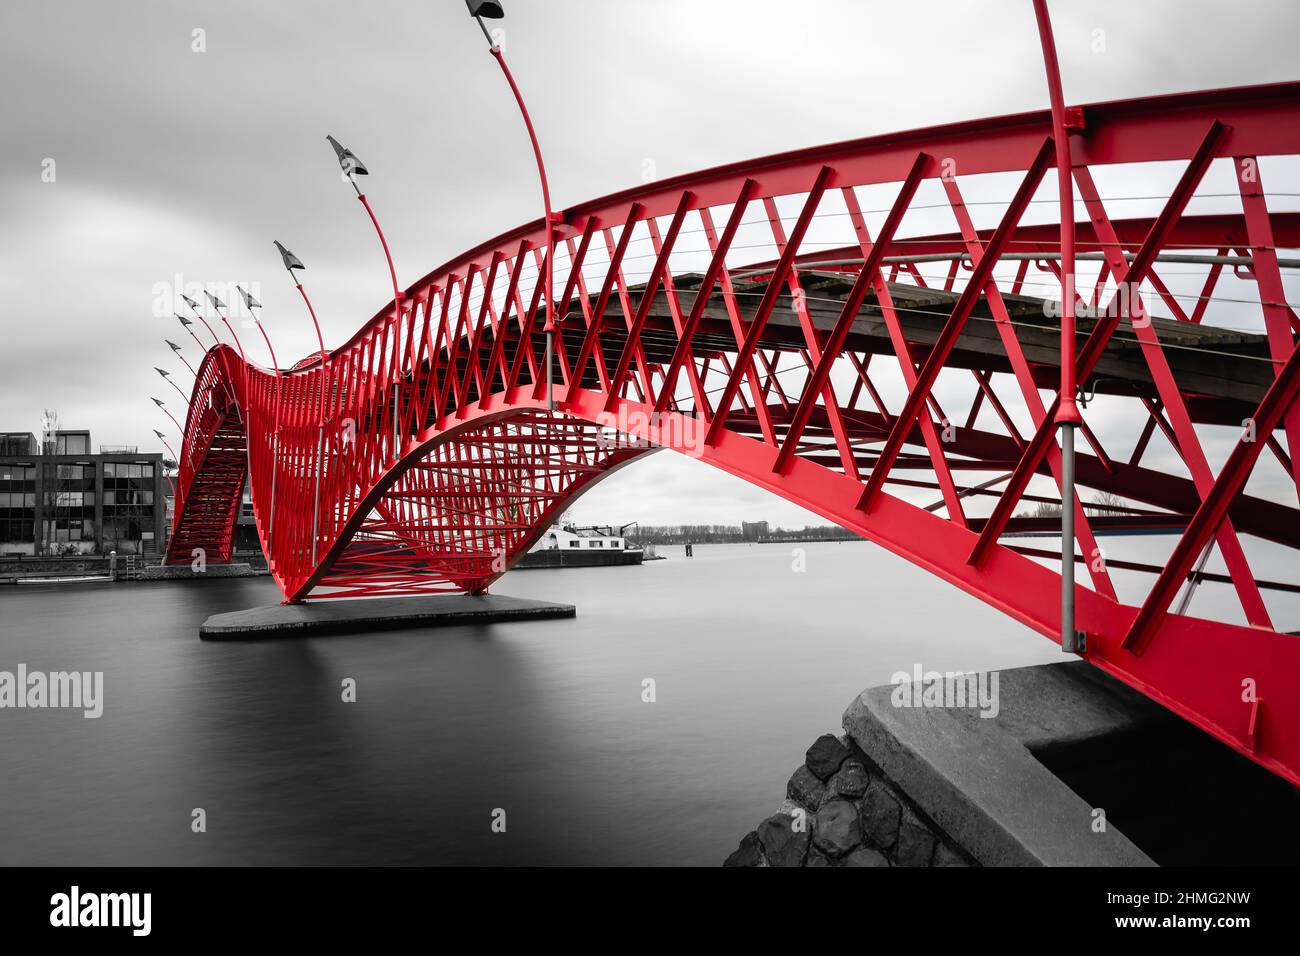 Pont Python, Amsterdam - photo noir et blanc avec des couleurs rouges Banque D'Images